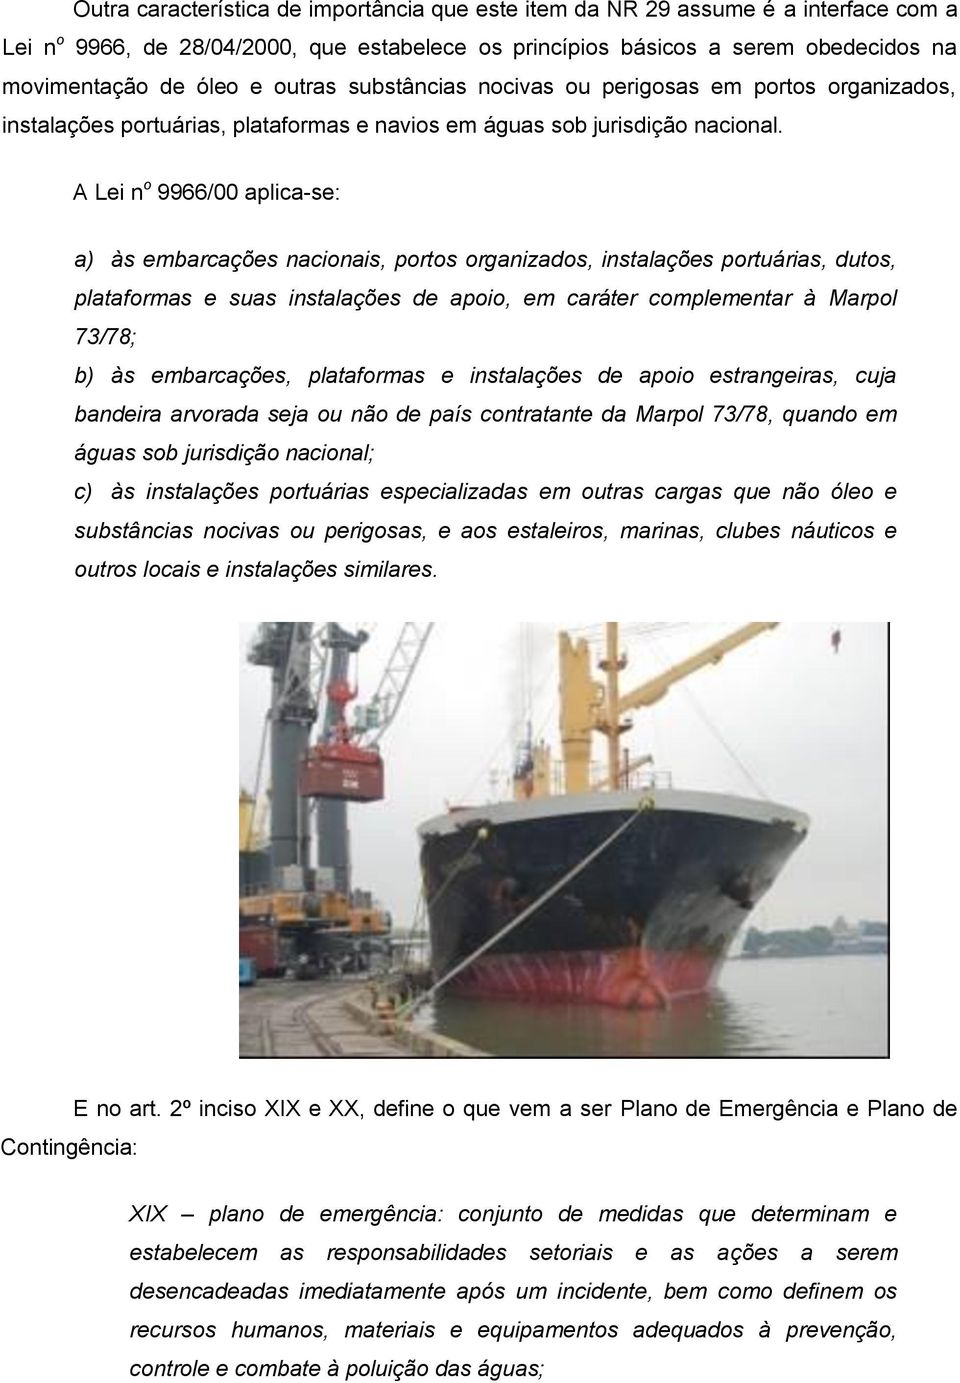 A Lei n o 9966/00 aplica-se: a) às embarcações nacionais, portos organizados, instalações portuárias, dutos, plataformas e suas instalações de apoio, em caráter complementar à Marpol 73/78; b) às